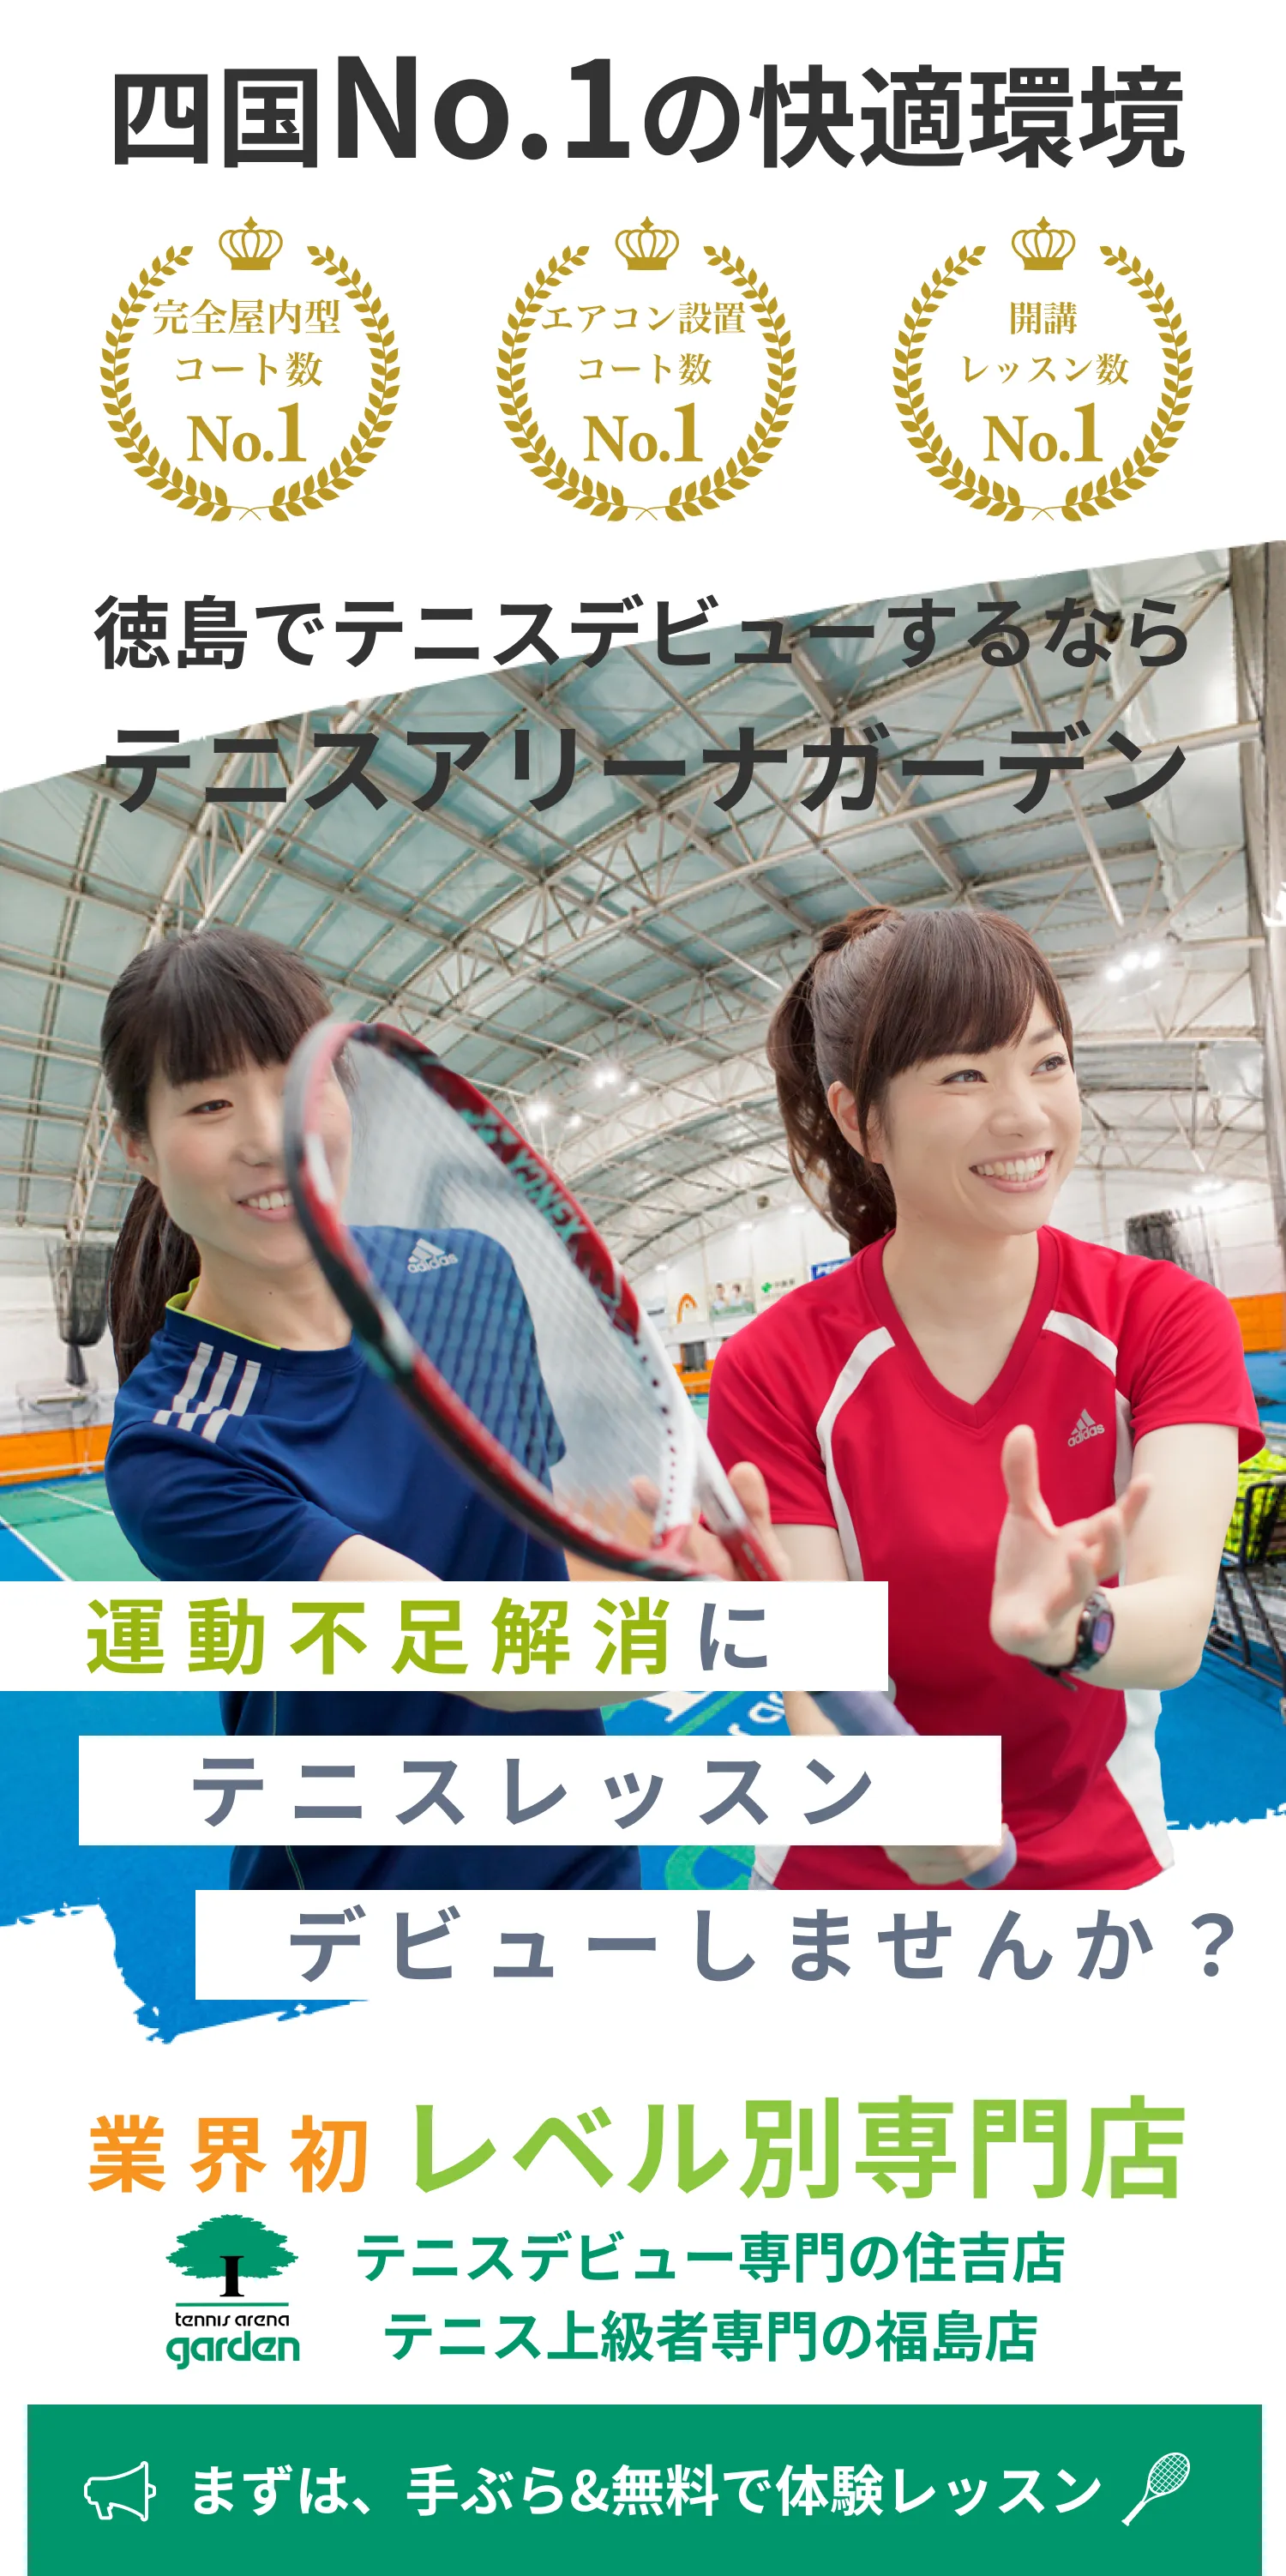 運動不足解消にテニスレッスンデビューしませんか。徳島でテニスデビユーするならテニスアリーナガーデン